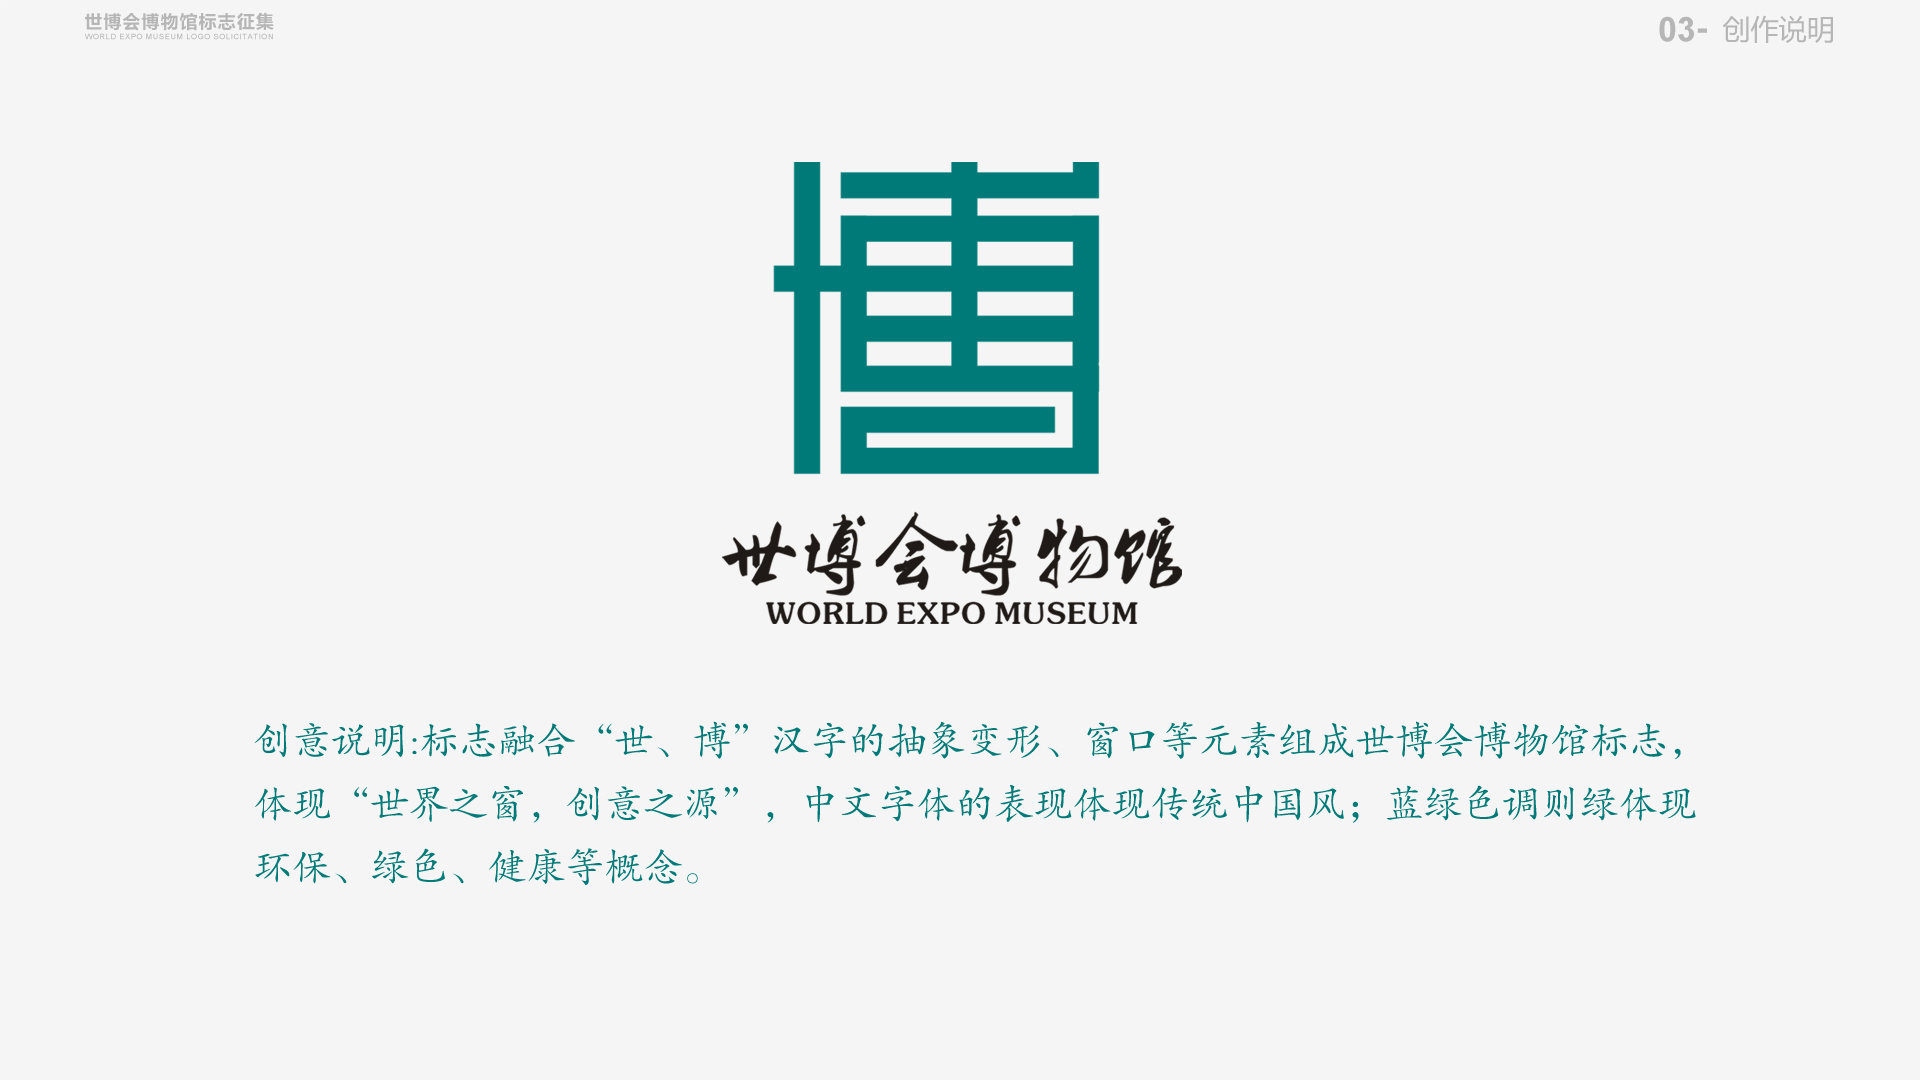 "世","博"两汉字以中国传统窗棂形式组成博物馆logo.